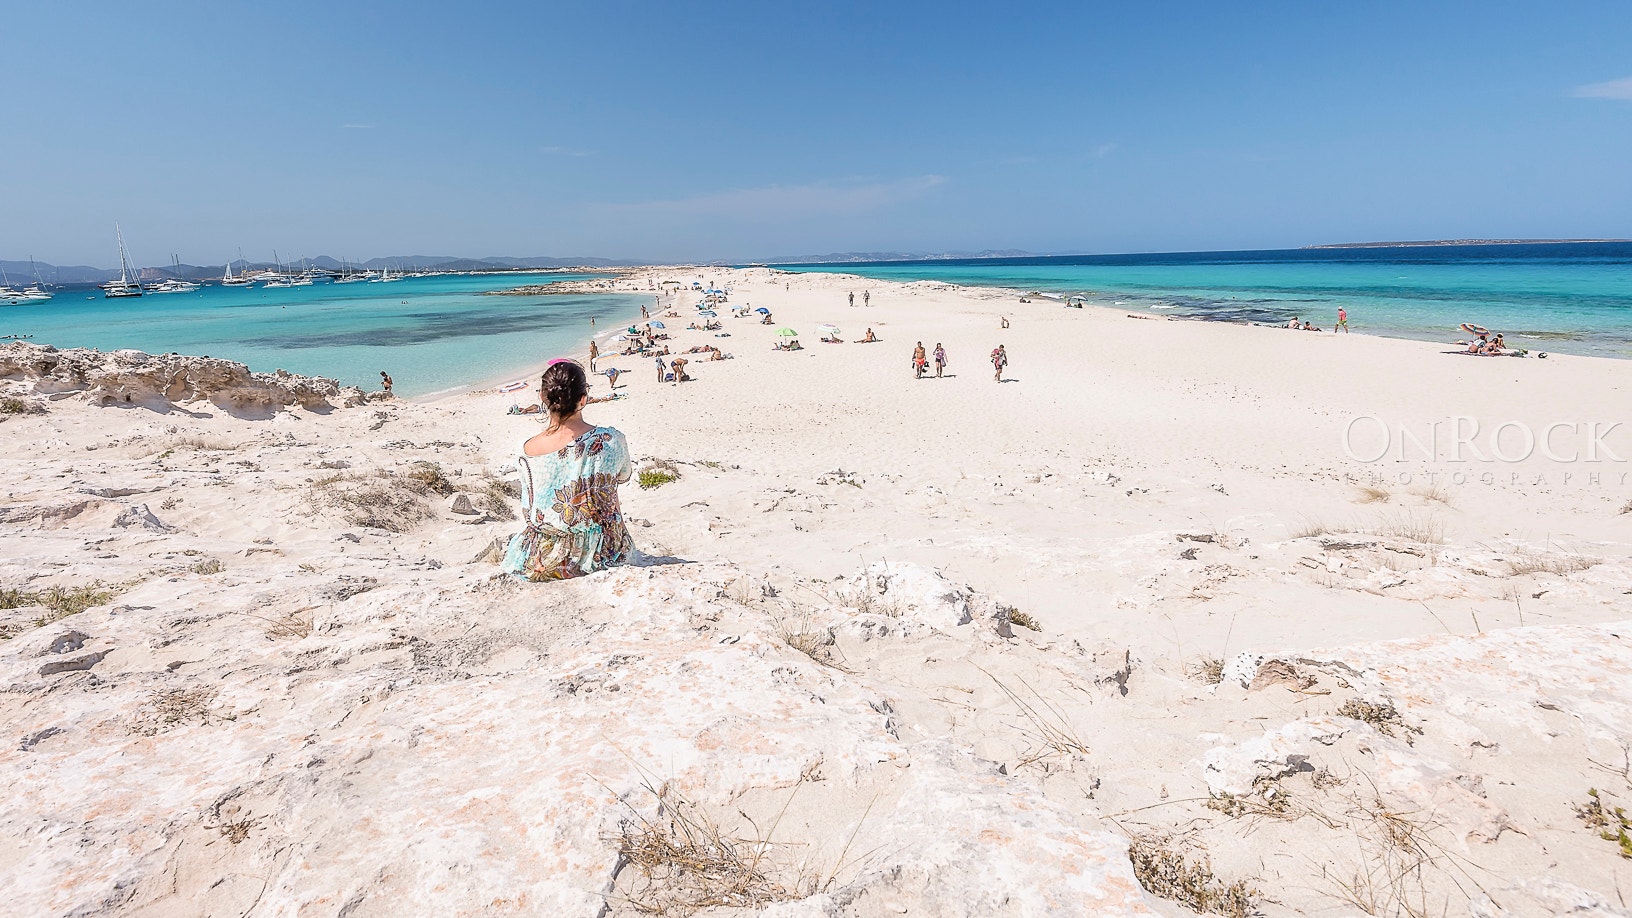  Enviado por Paulo Colsoul Roque, F&eacute;rias de Ver&atilde;o em Julho de 2015, na ilha de Ibiza. Visita &agrave; ilha de Formentera onde se situam as melhores praias do Mundo. 